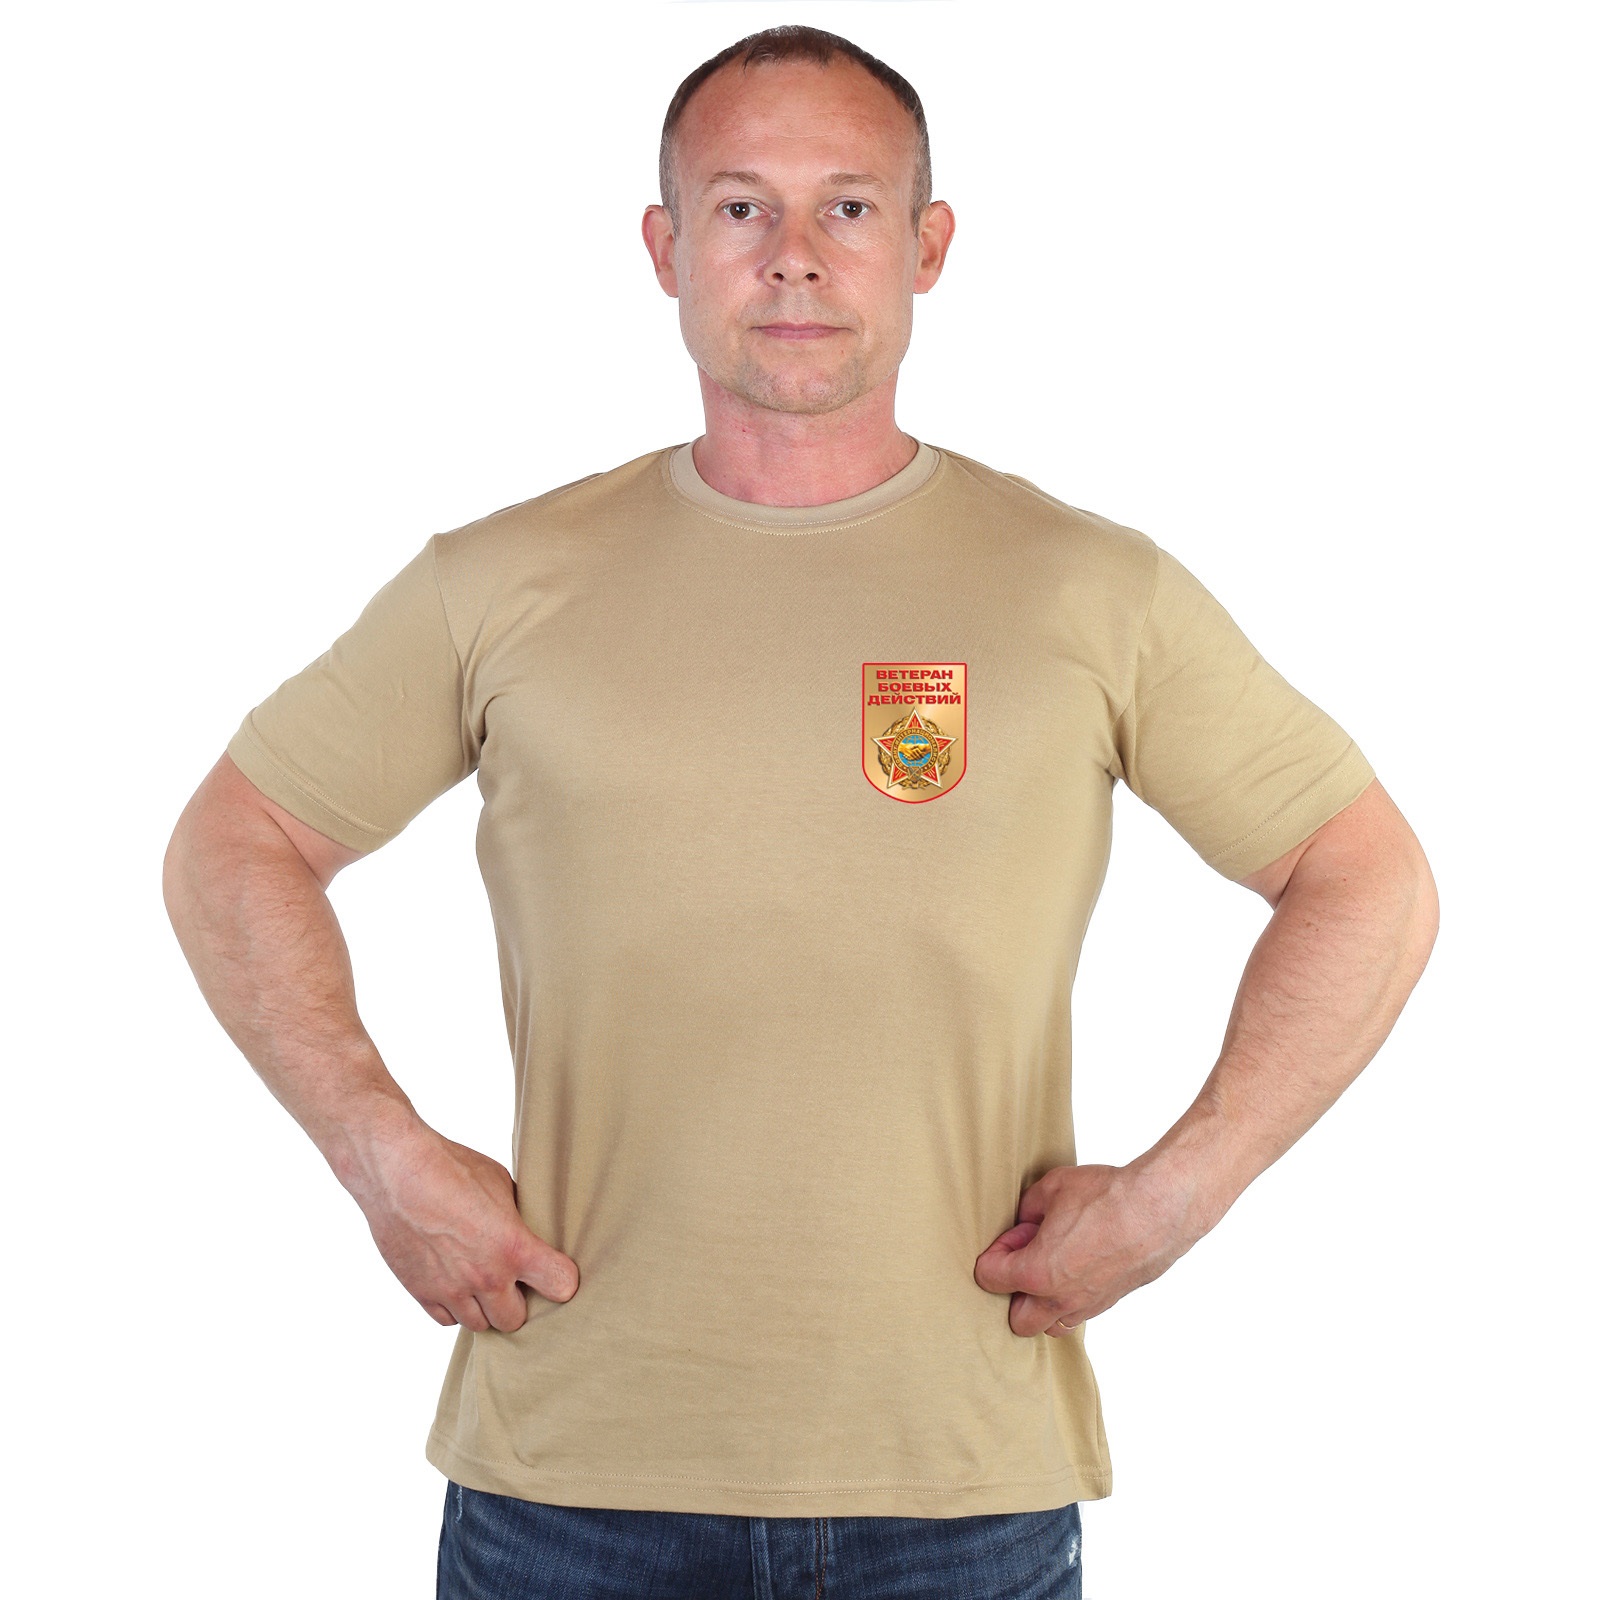 Песочная футболка с термотрансфером "Ветеран боевых действий" 